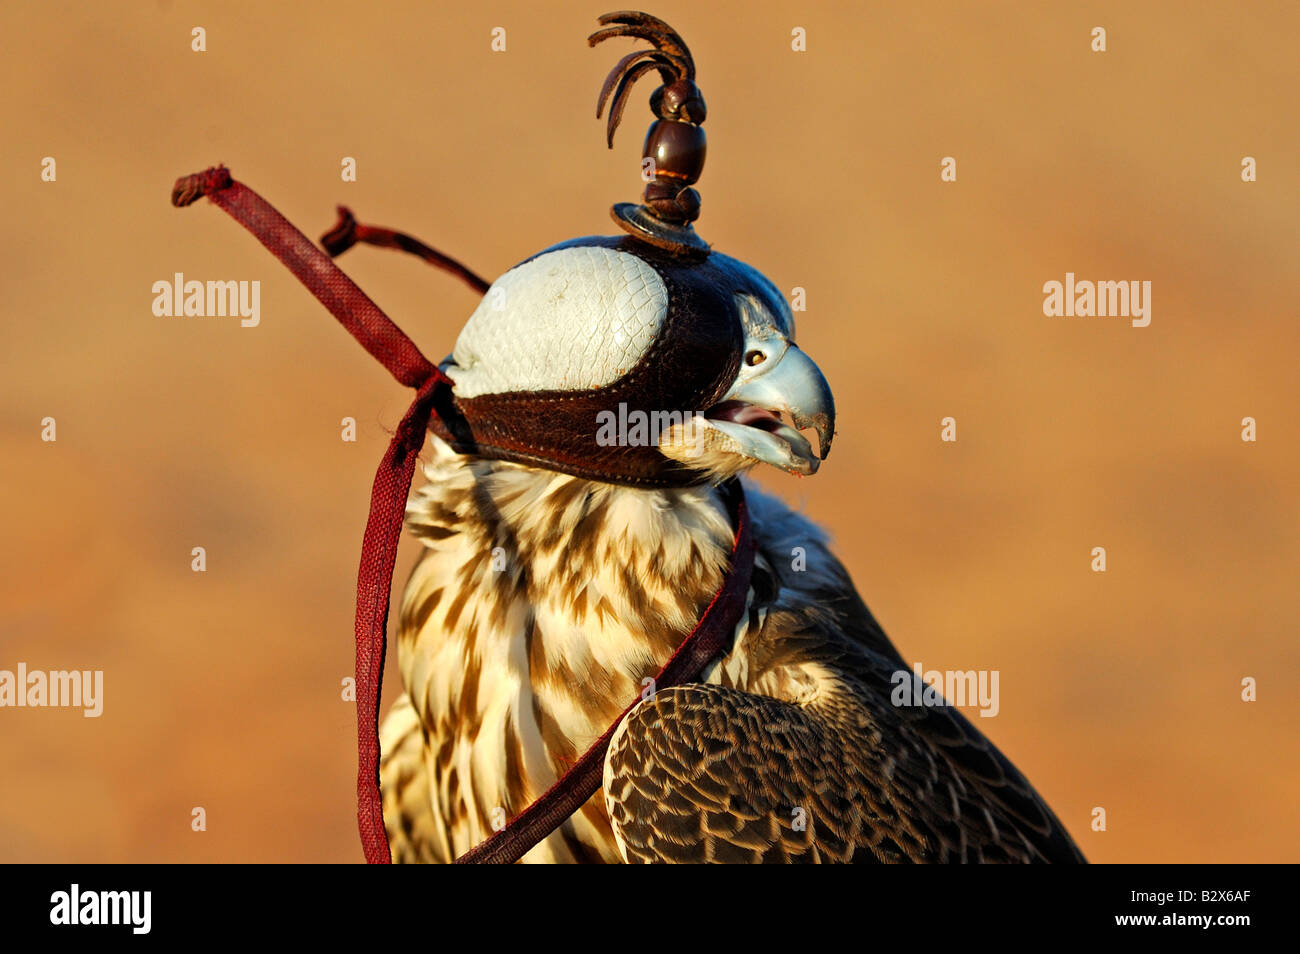 Hunting falcon with a hood, Dubai, United Arab Emirates, UAE Stock Photo